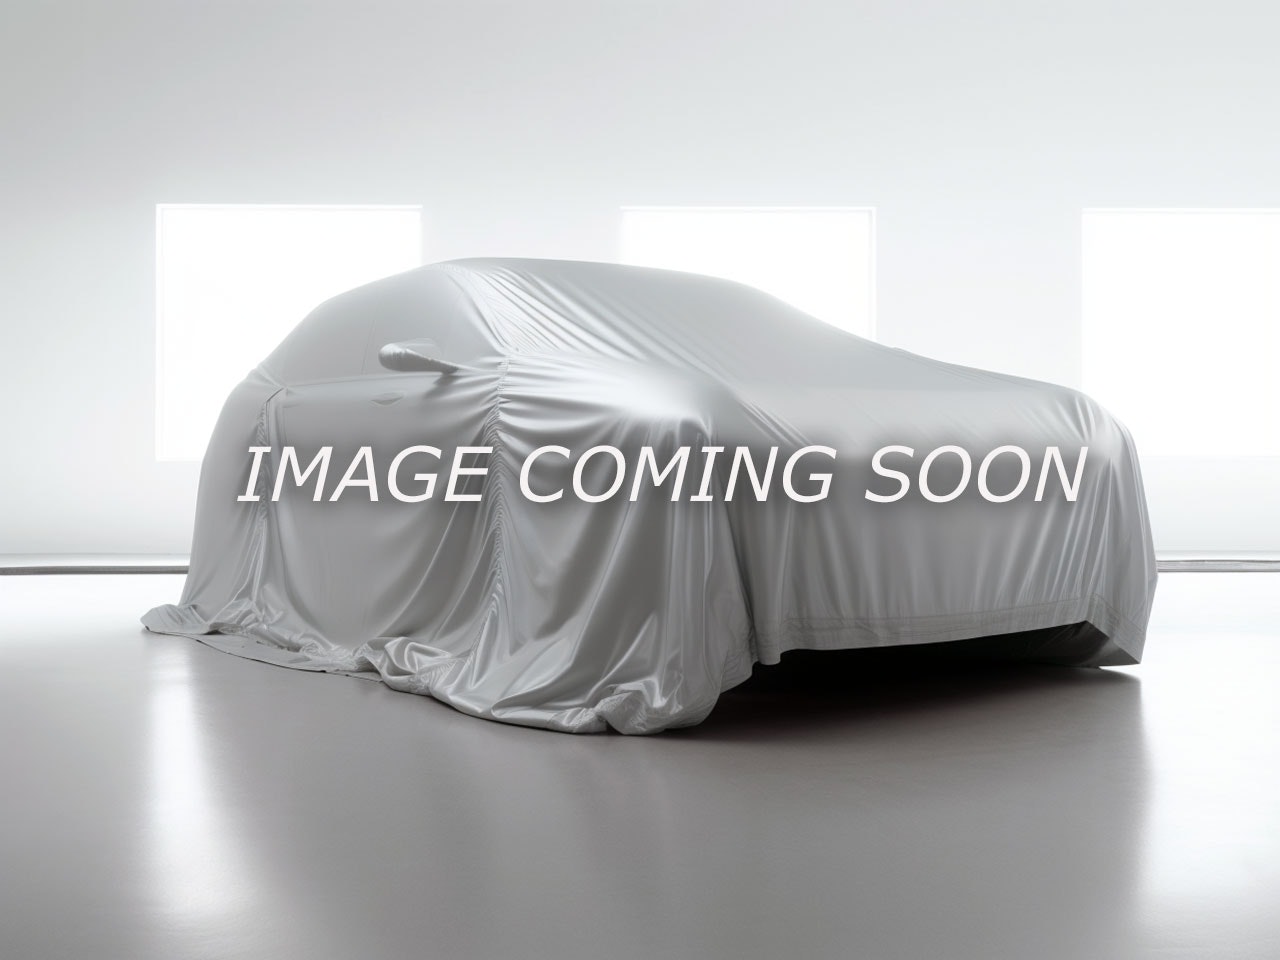 2018 Hyundai Elantra GT GL (AG181) Main Image